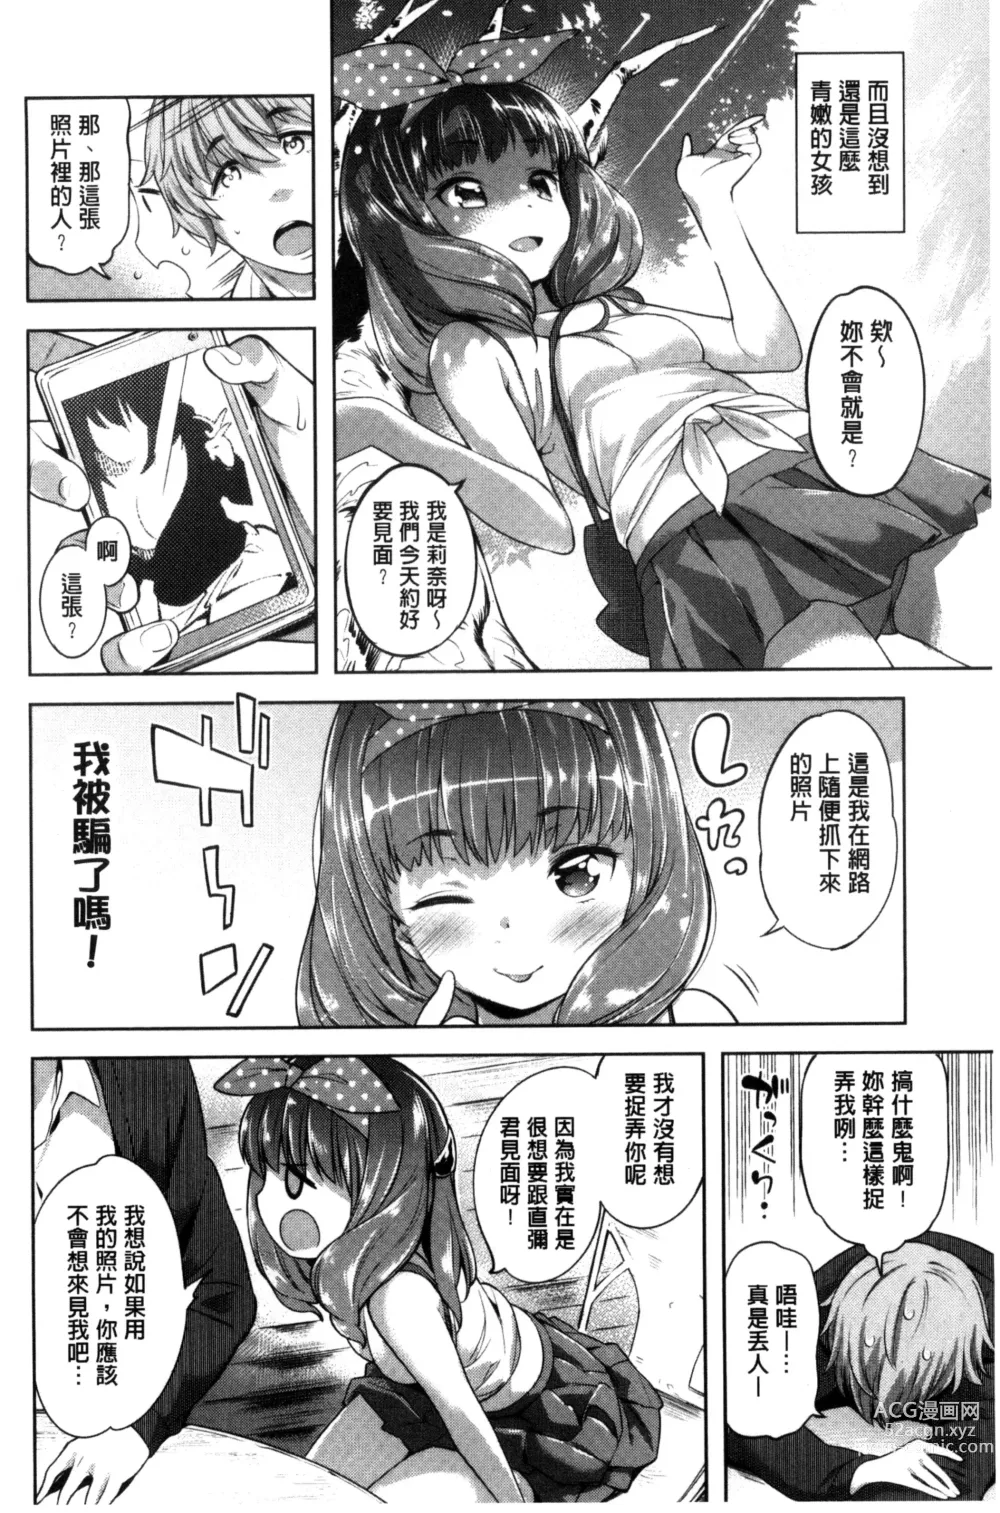 Page 12 of manga Zettai Muteki Shoujo - Cant beat me at sex!!